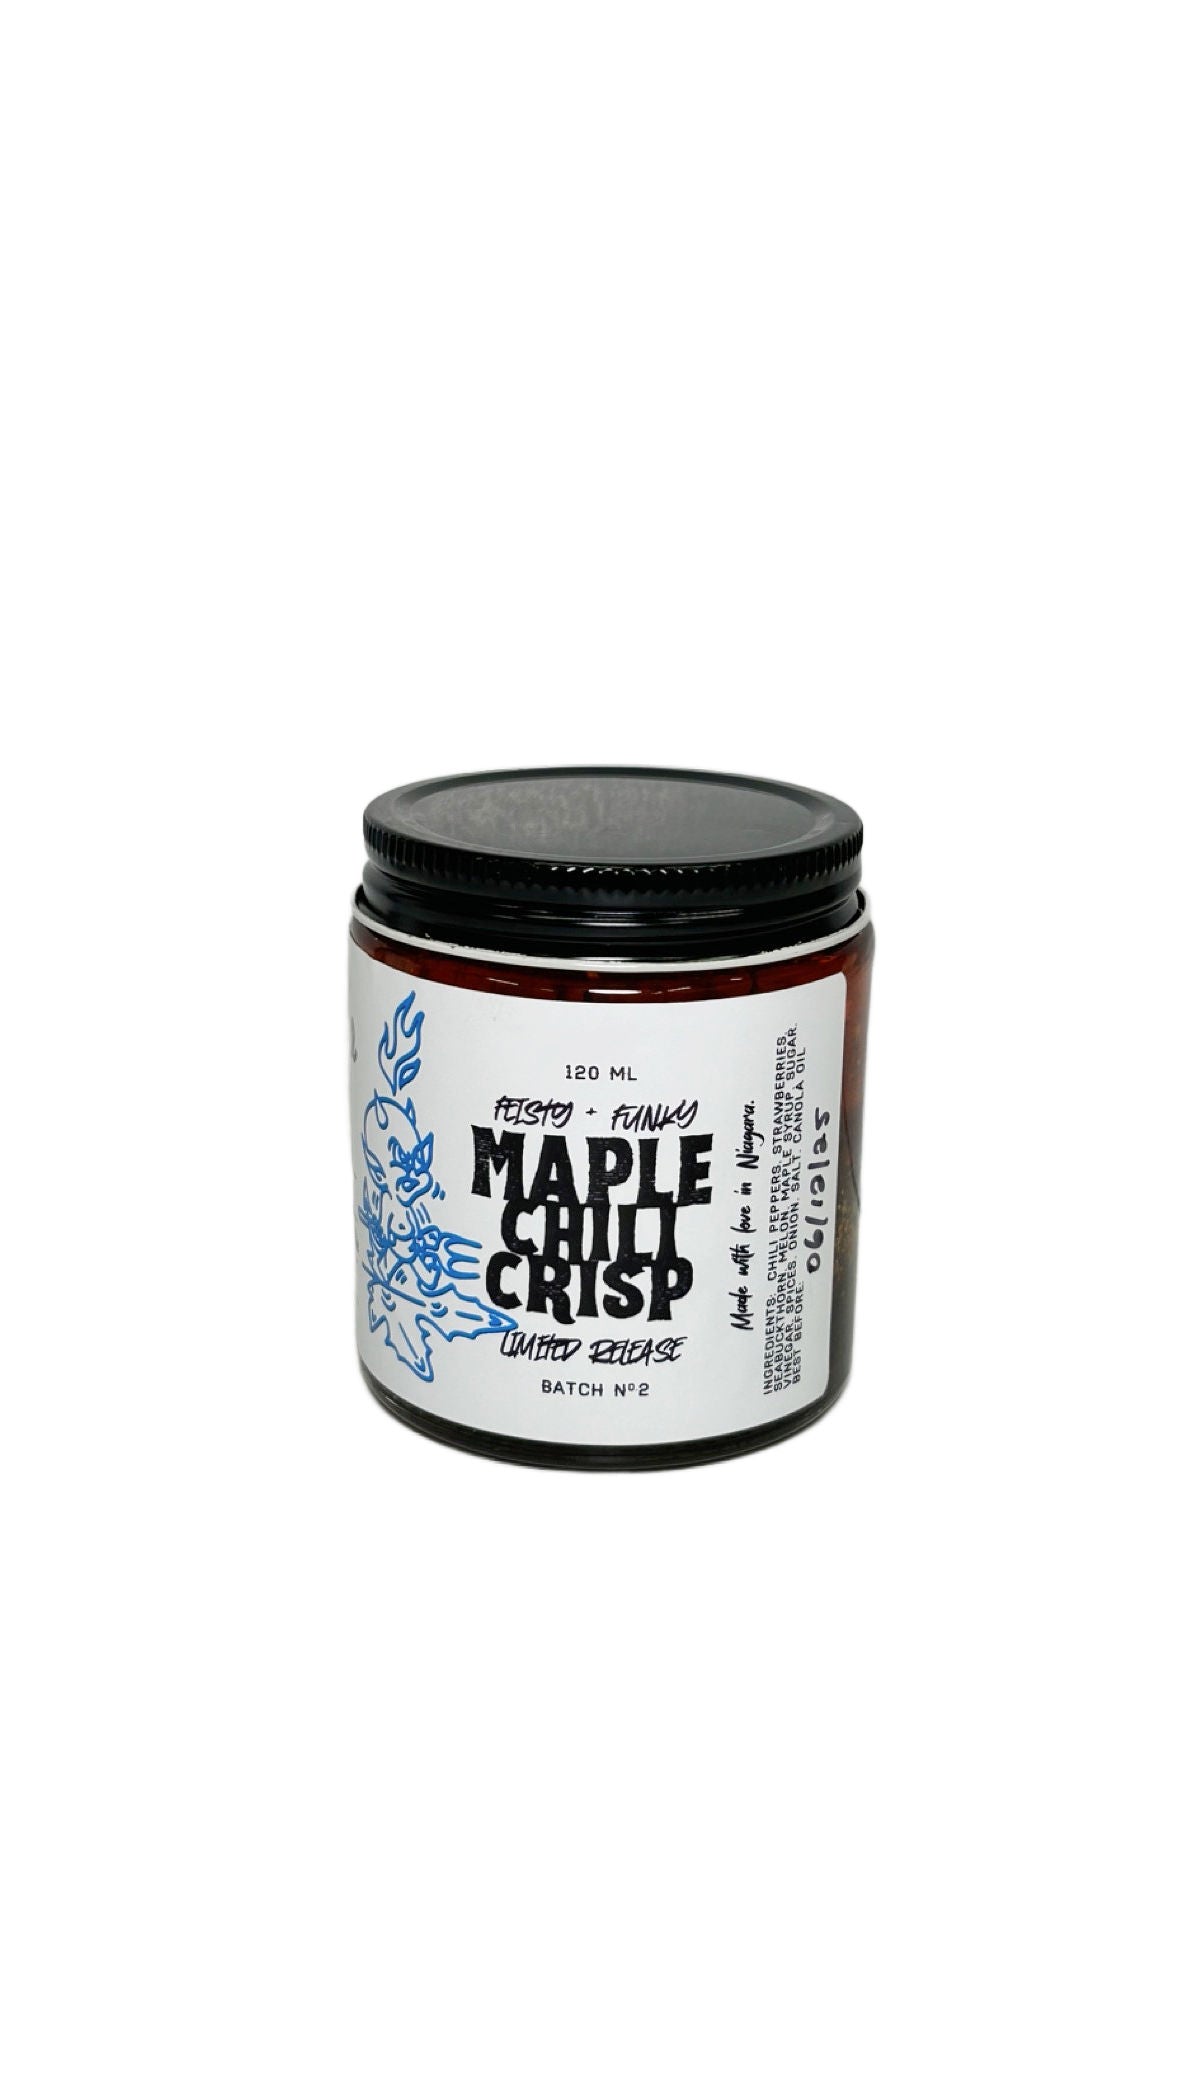 Maple Chili Crisp